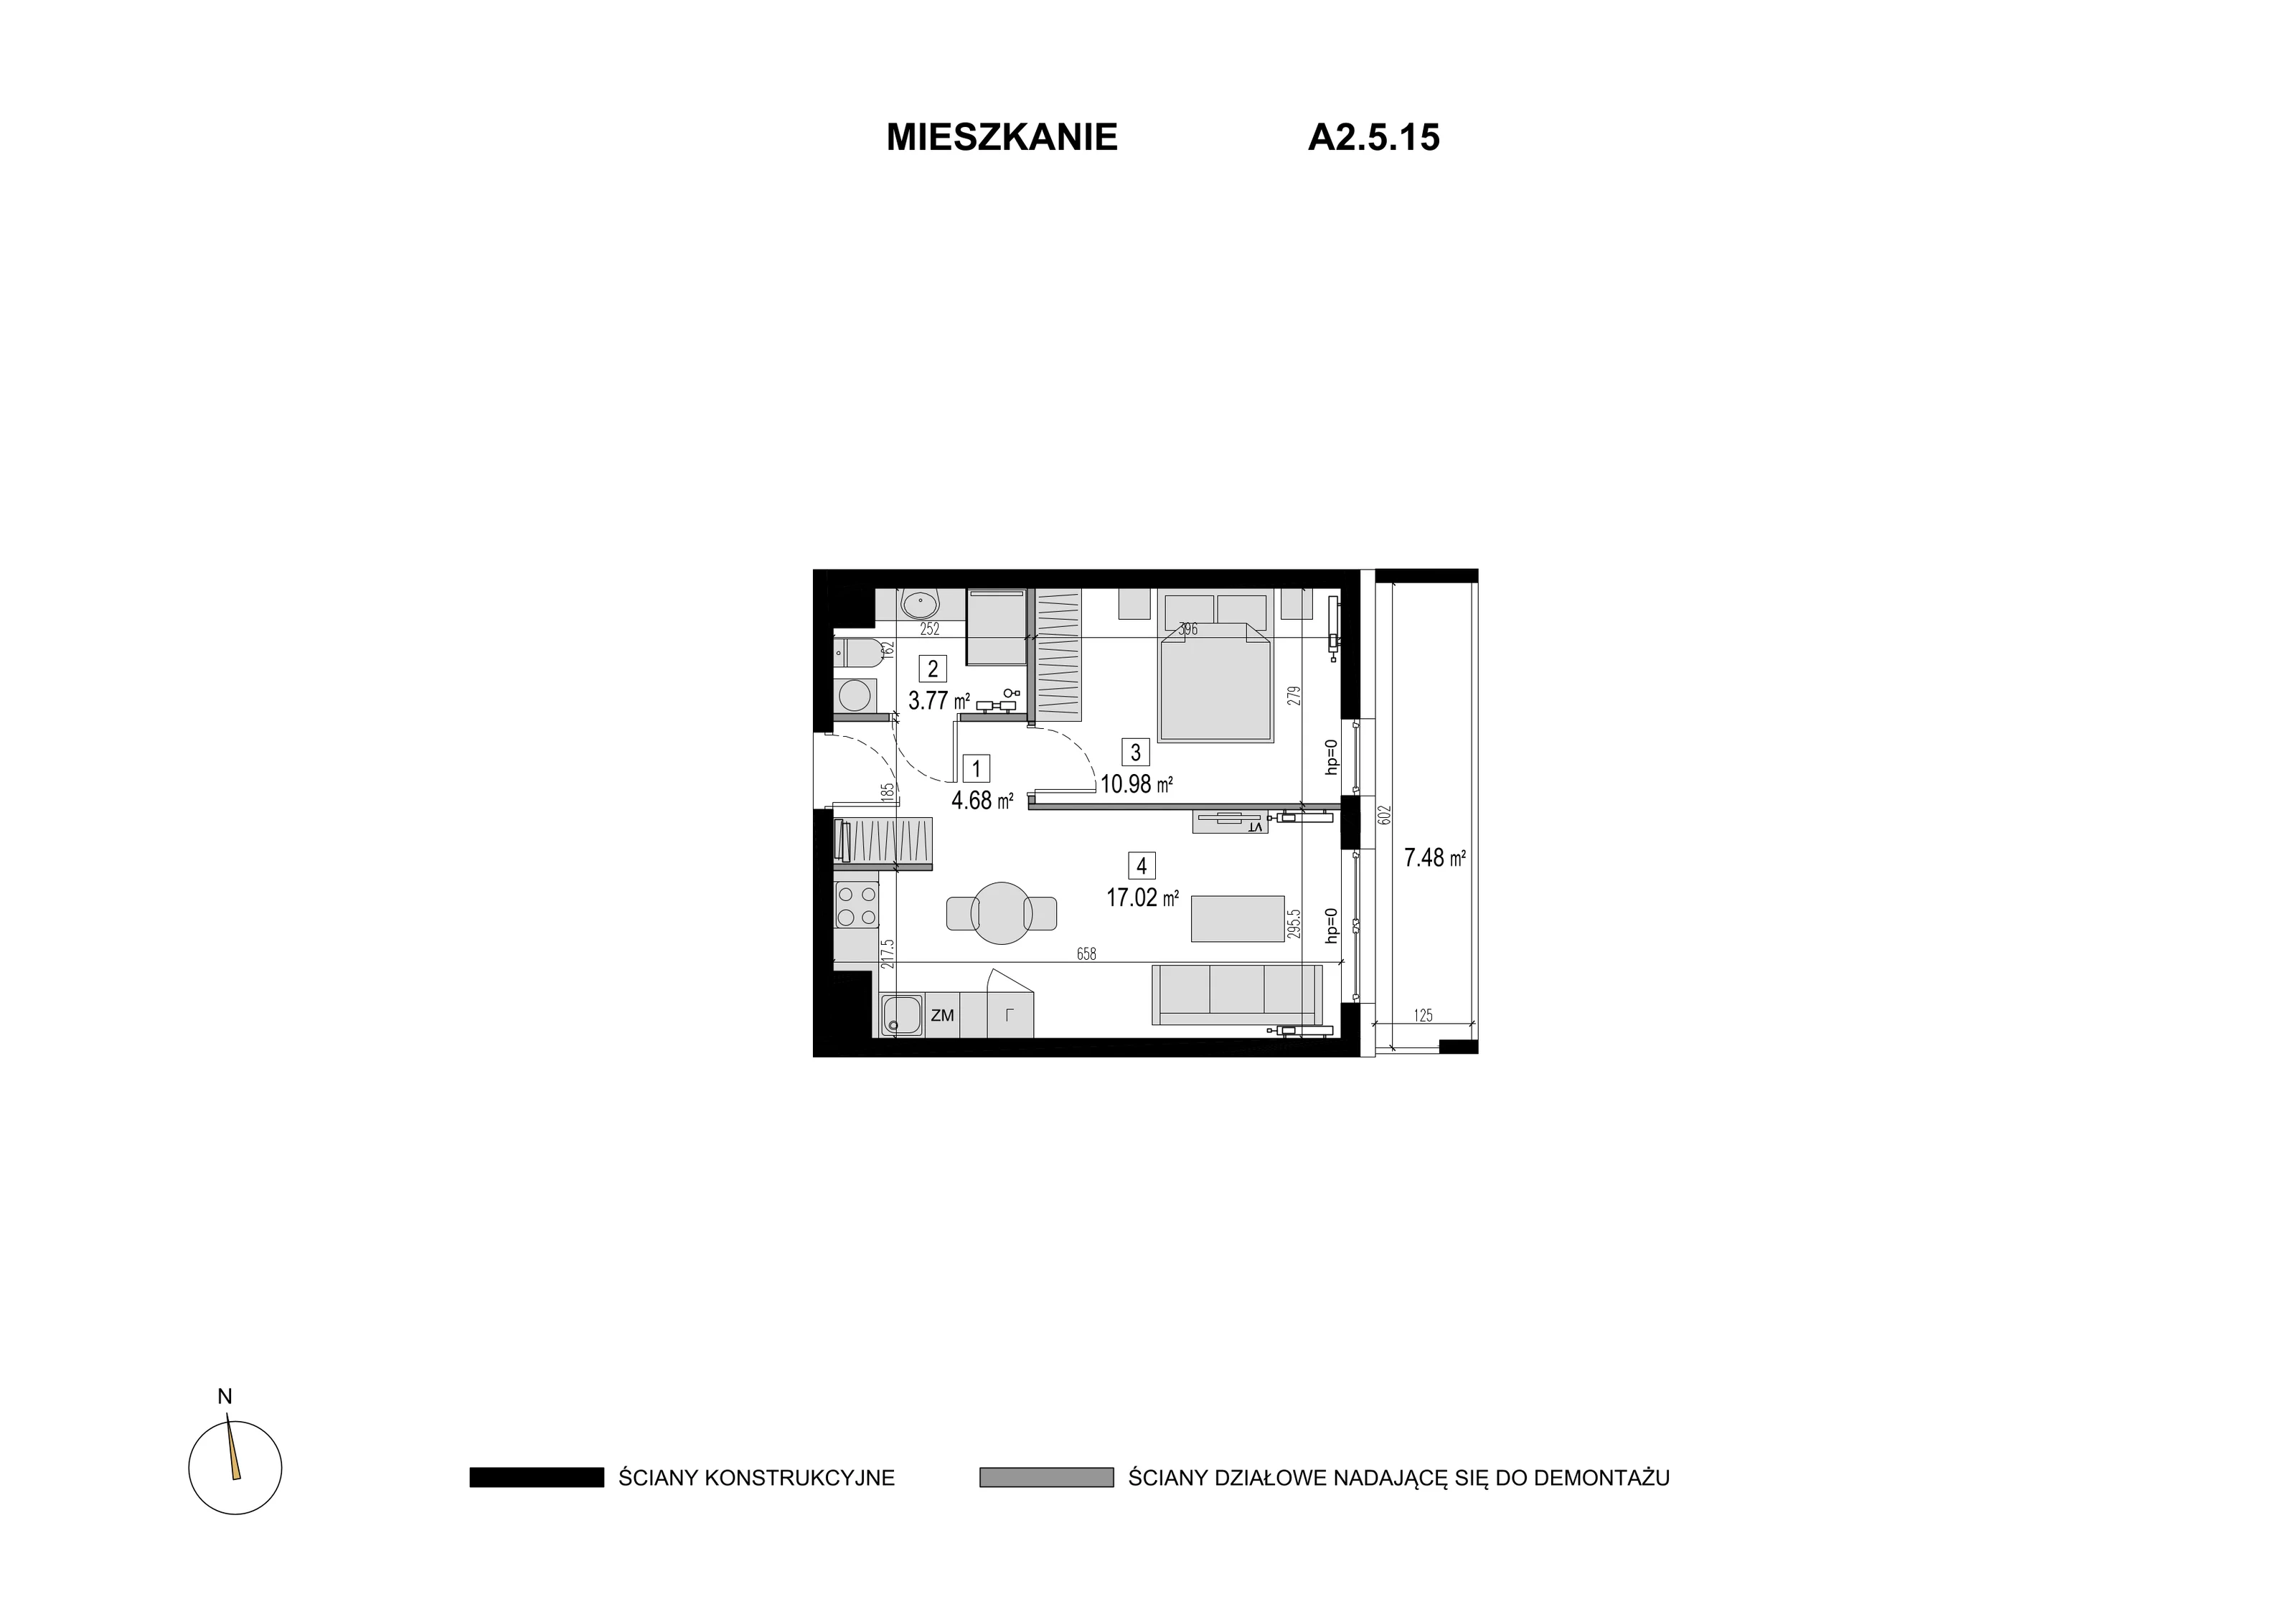 Mieszkanie 36,45 m², piętro 4, oferta nr A2.5.15, Novaforma, Legnica, ul. Chojnowska